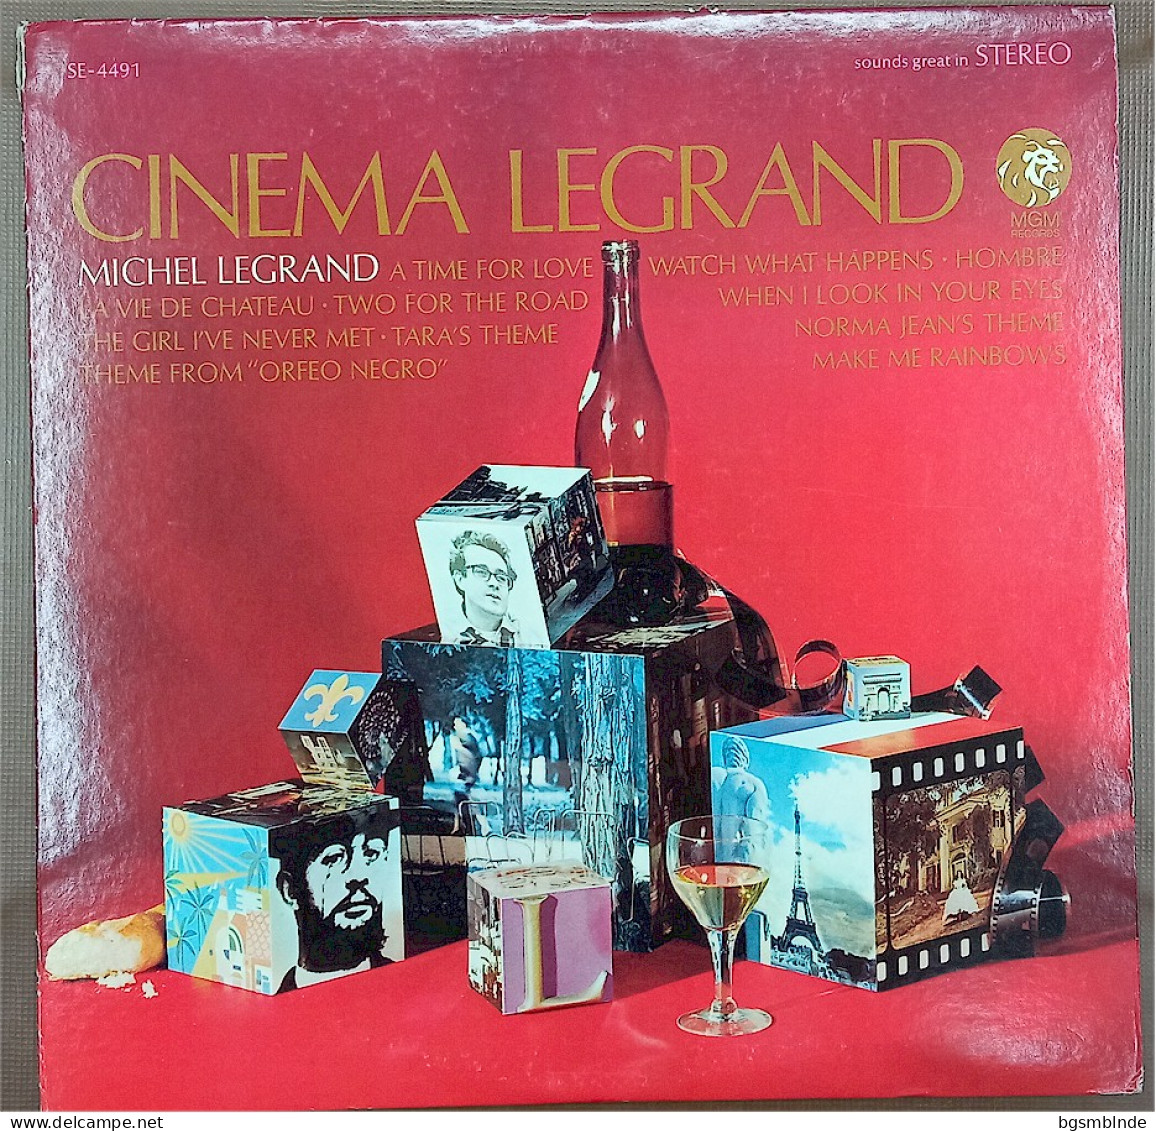 Cinema Legrand - Michel Legrand - Sonstige - Deutsche Musik